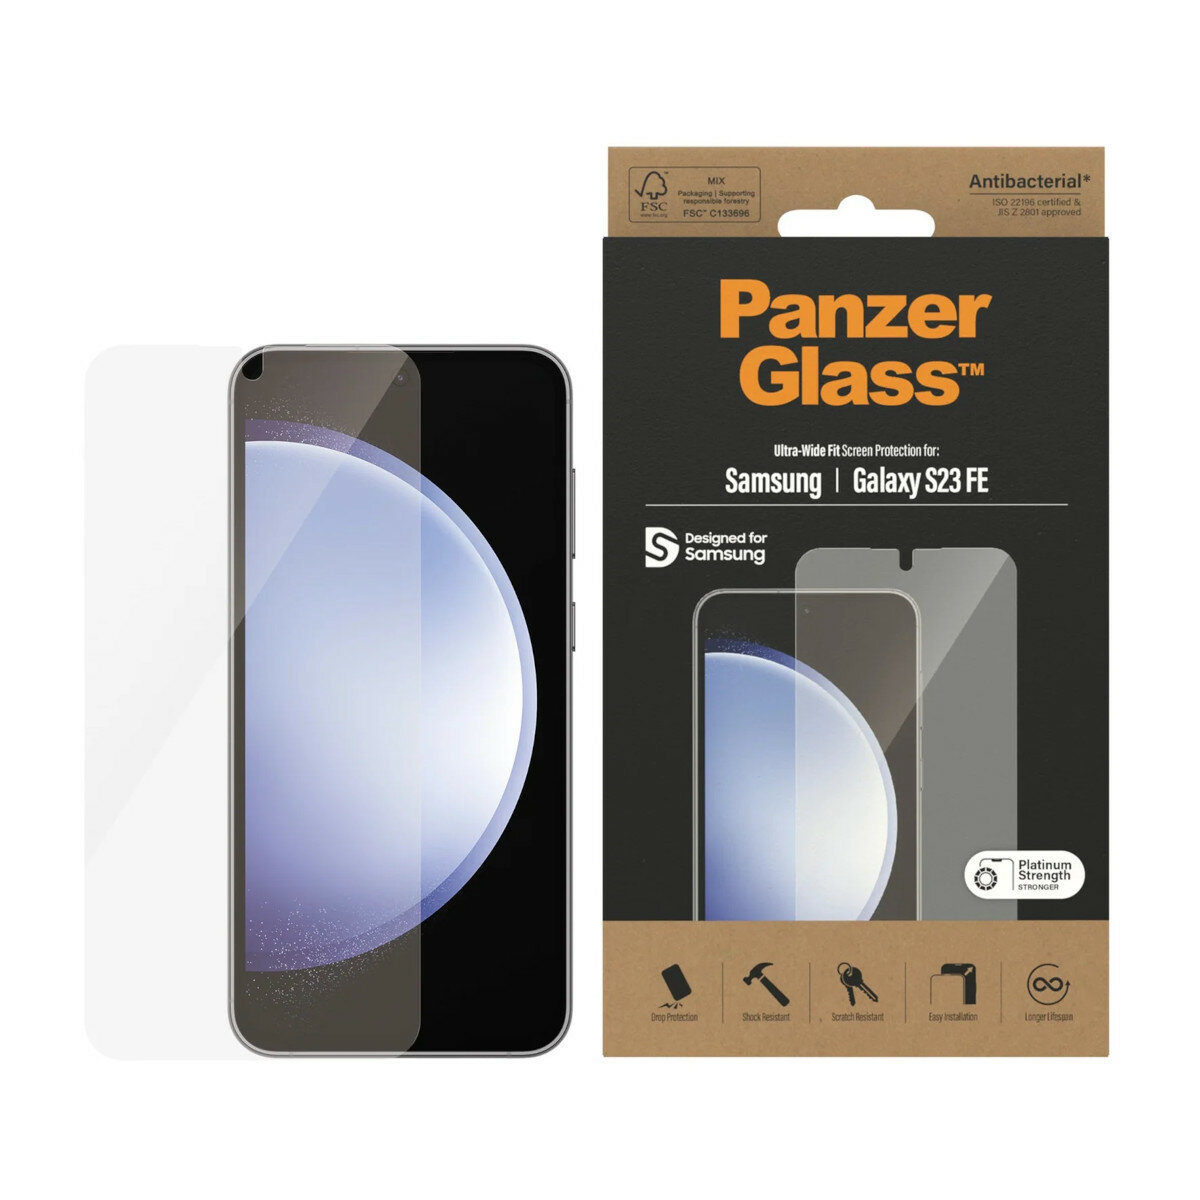 Szkło ochronne PanzerGlass Ultra-Wide Fit Samsung Galaxy S23 FE widok na smartfon wraz ze szkłem hartowanym i pudełko